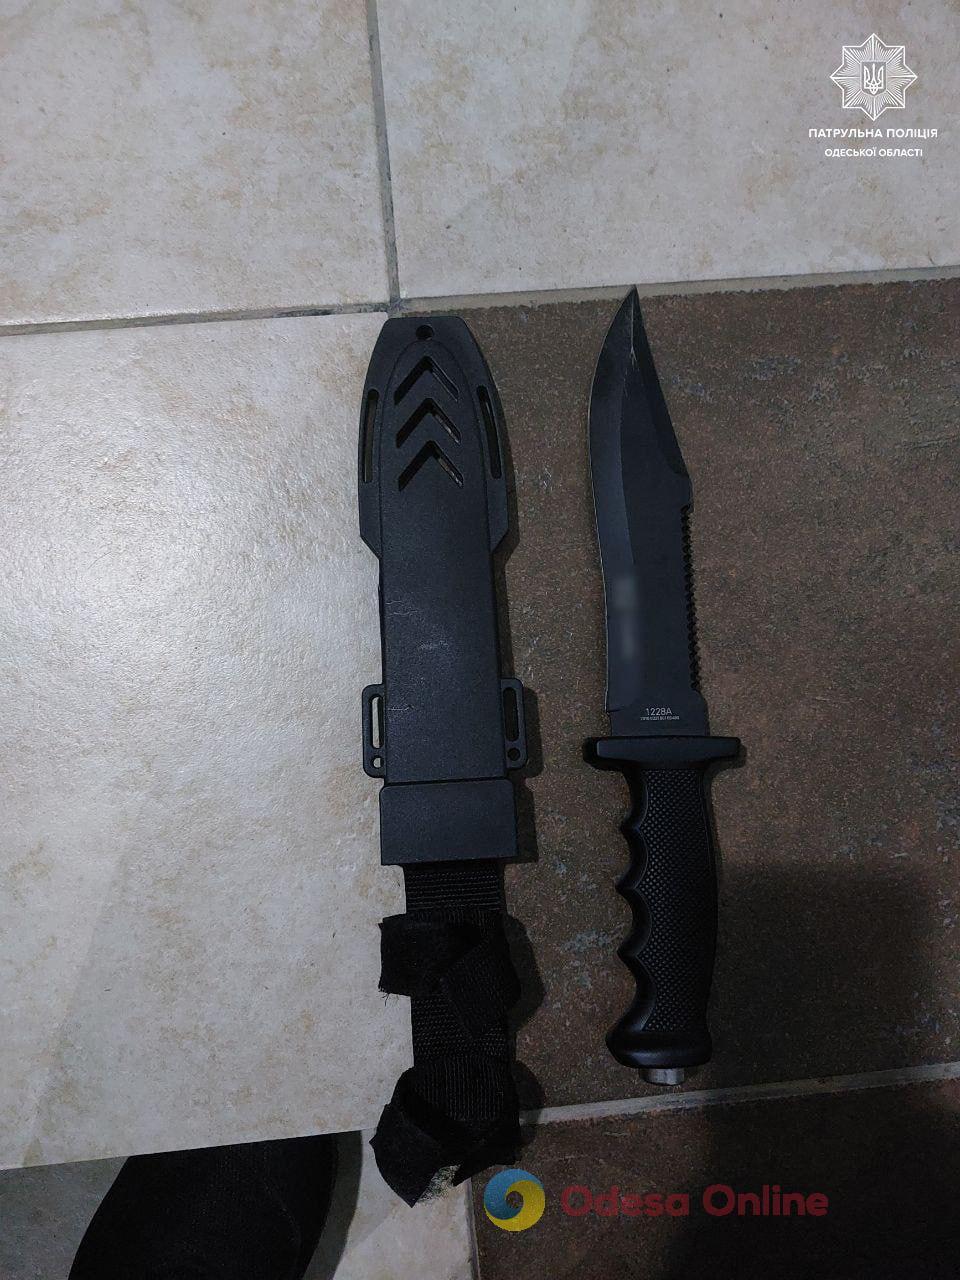 В Измаиле агрессивный мужчина угрожал прохожим ножом